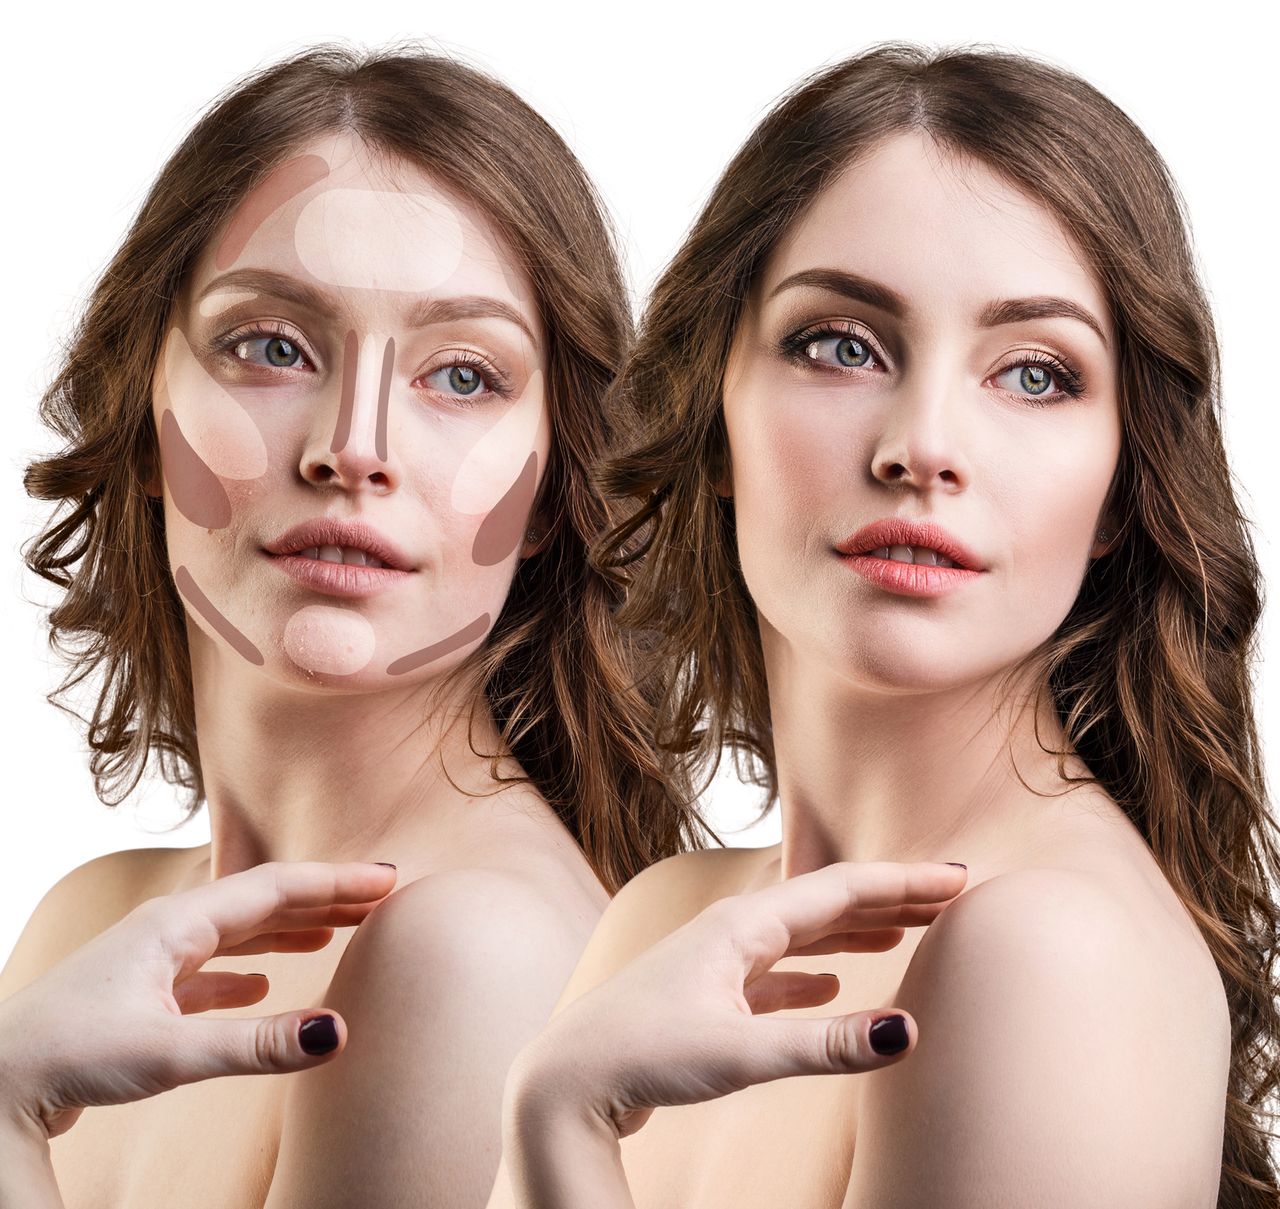 Konturowanie twarzy - jak modelować rysy twarzy podkładem?